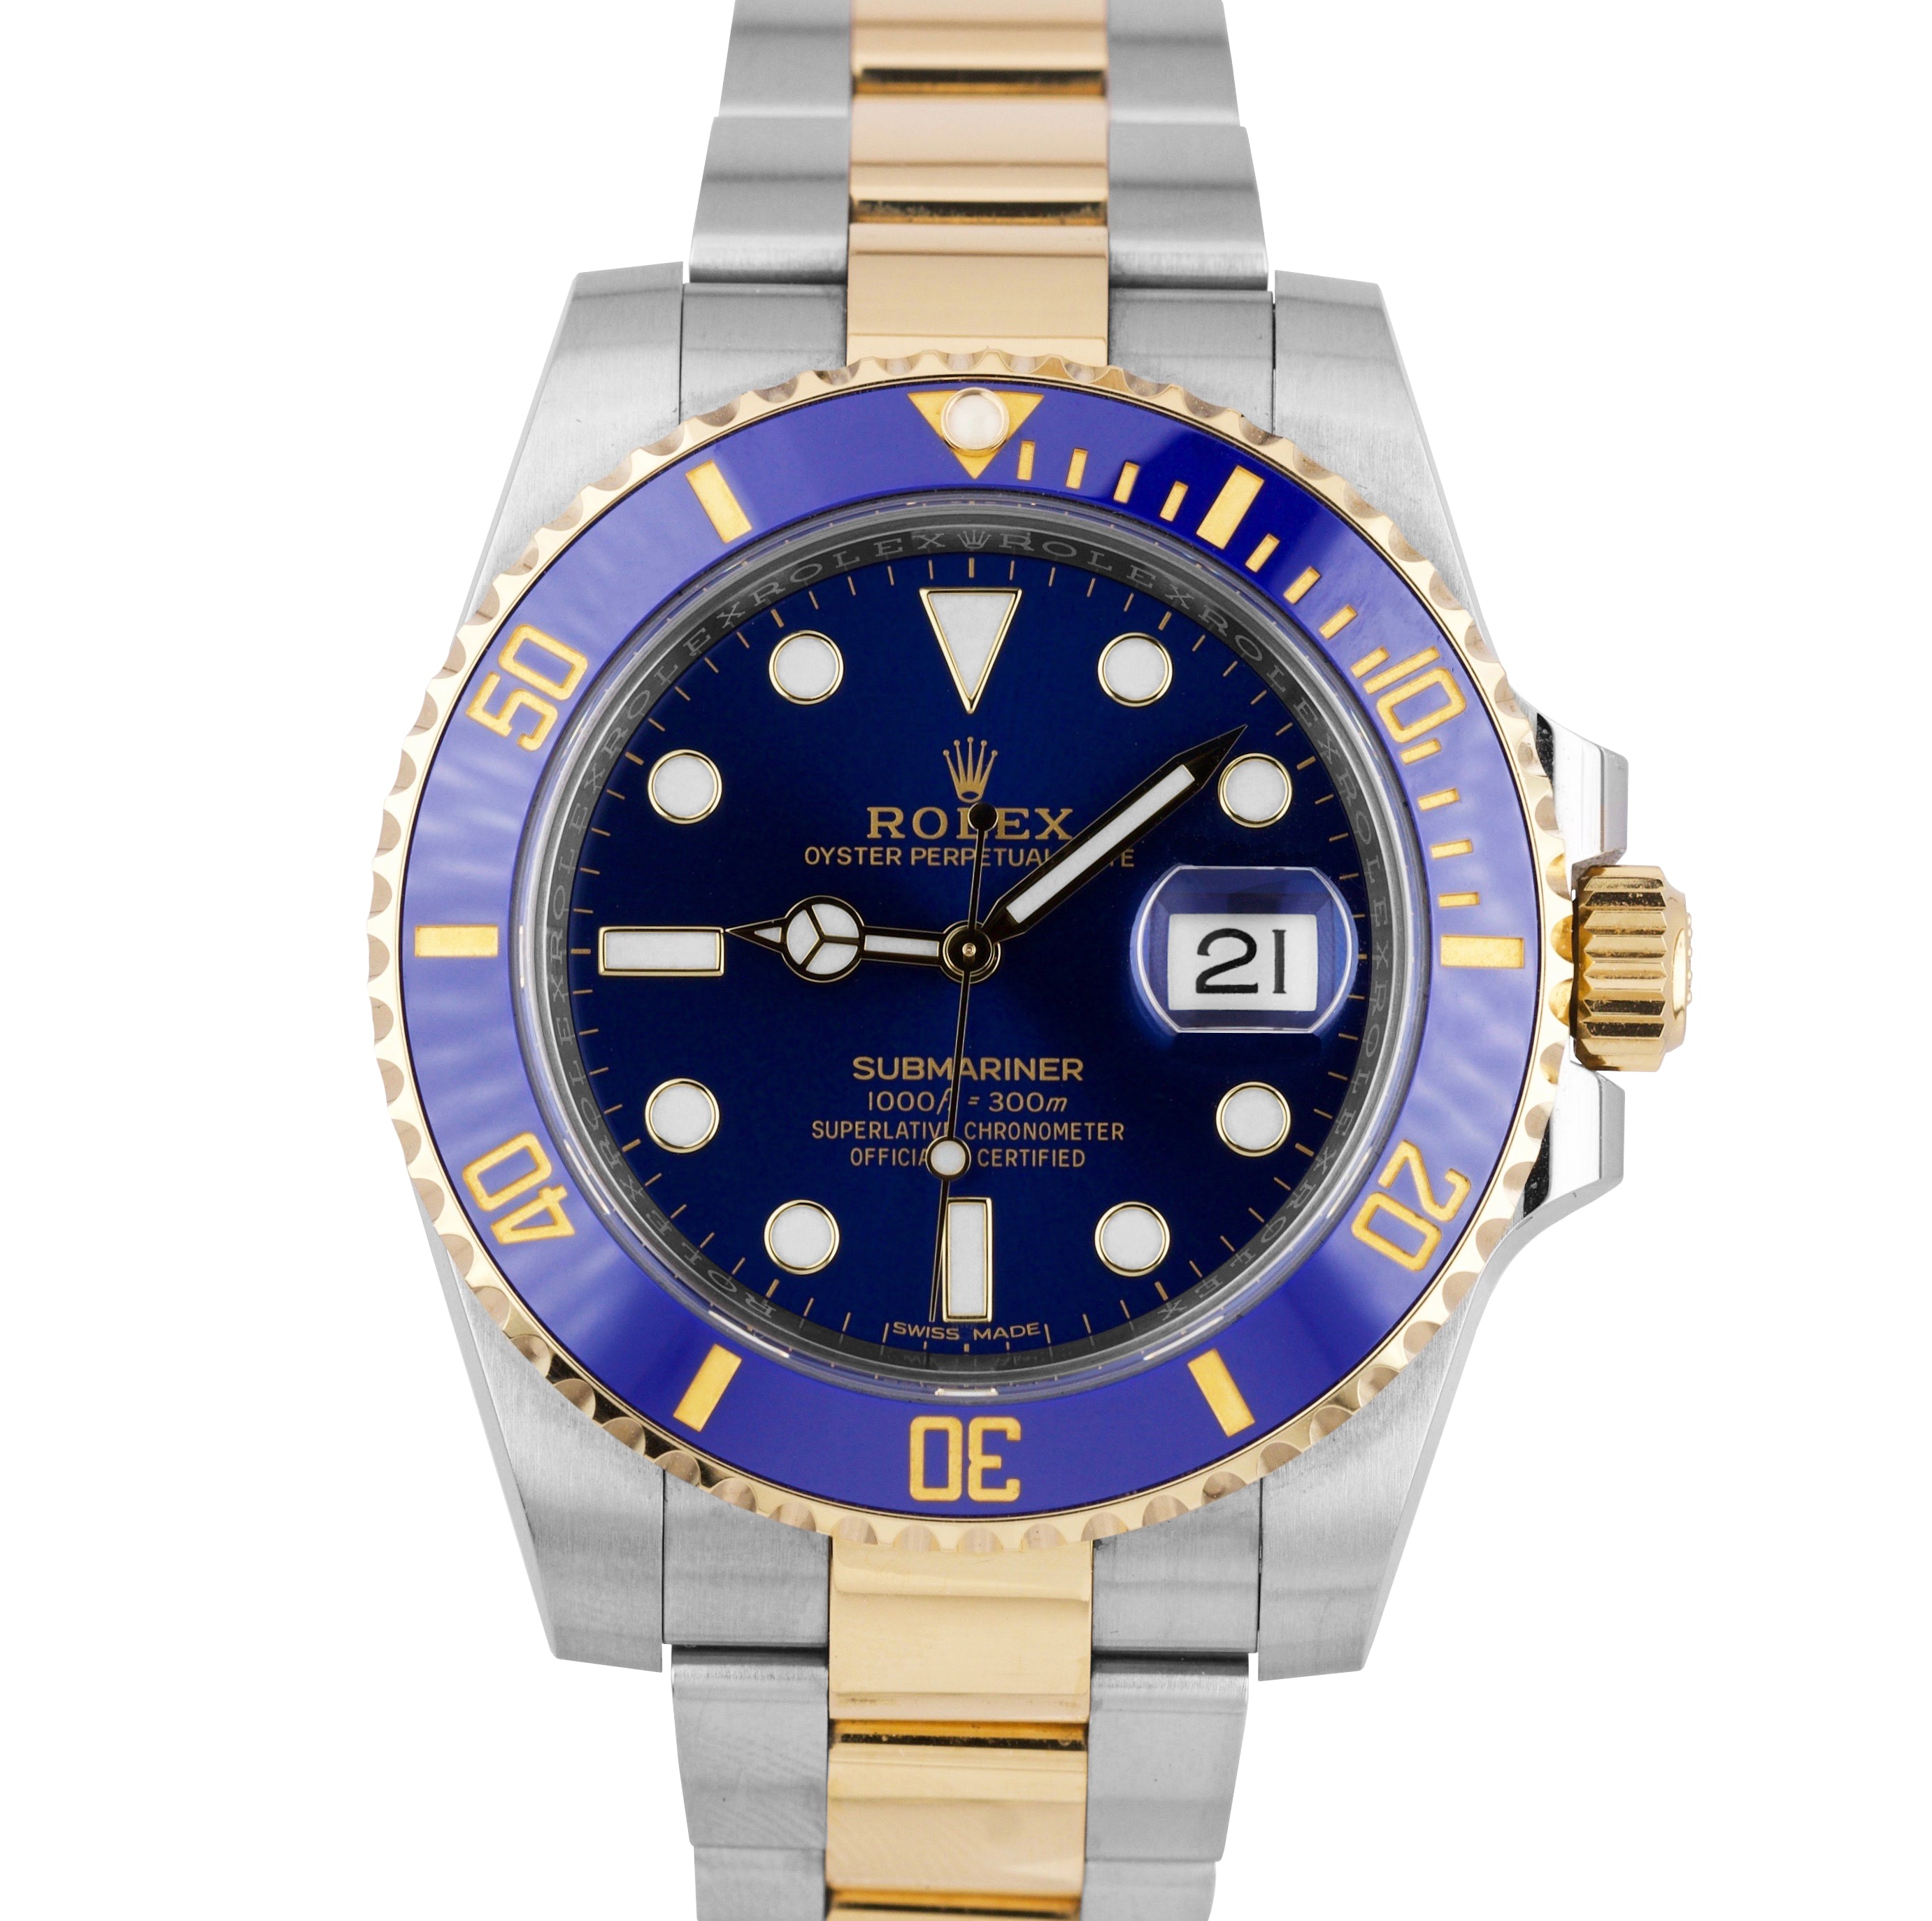 Sunburst Rolex Submariner 116613 LB Gold Blue